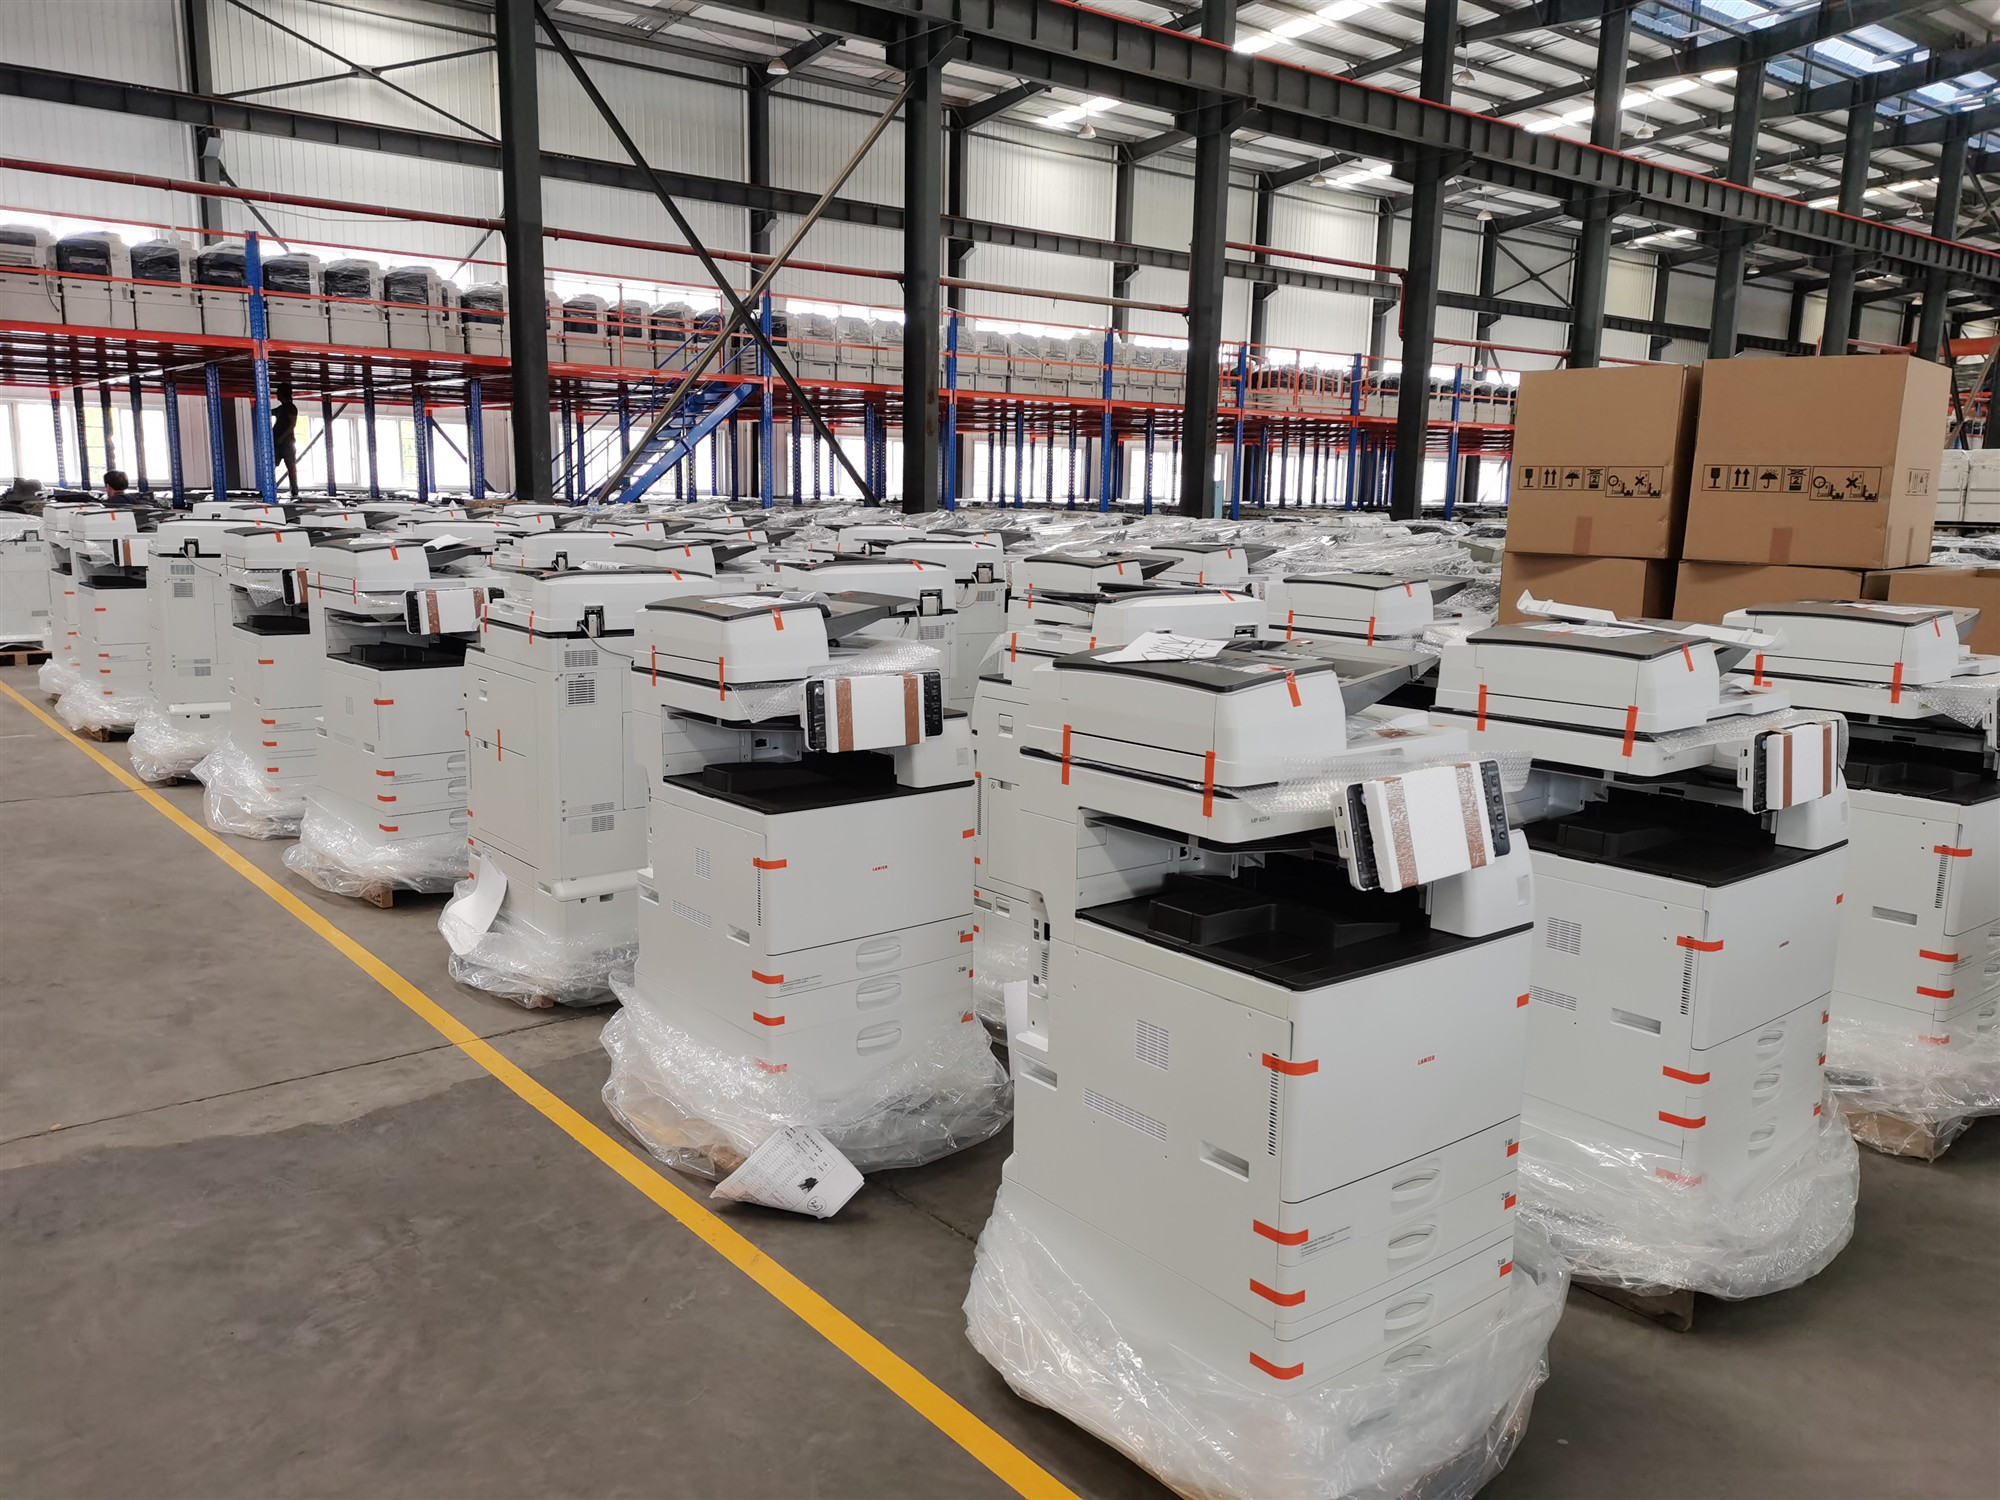 Dịch vụ cho thuê máy photocopy tại tỉnh Hưng Yên